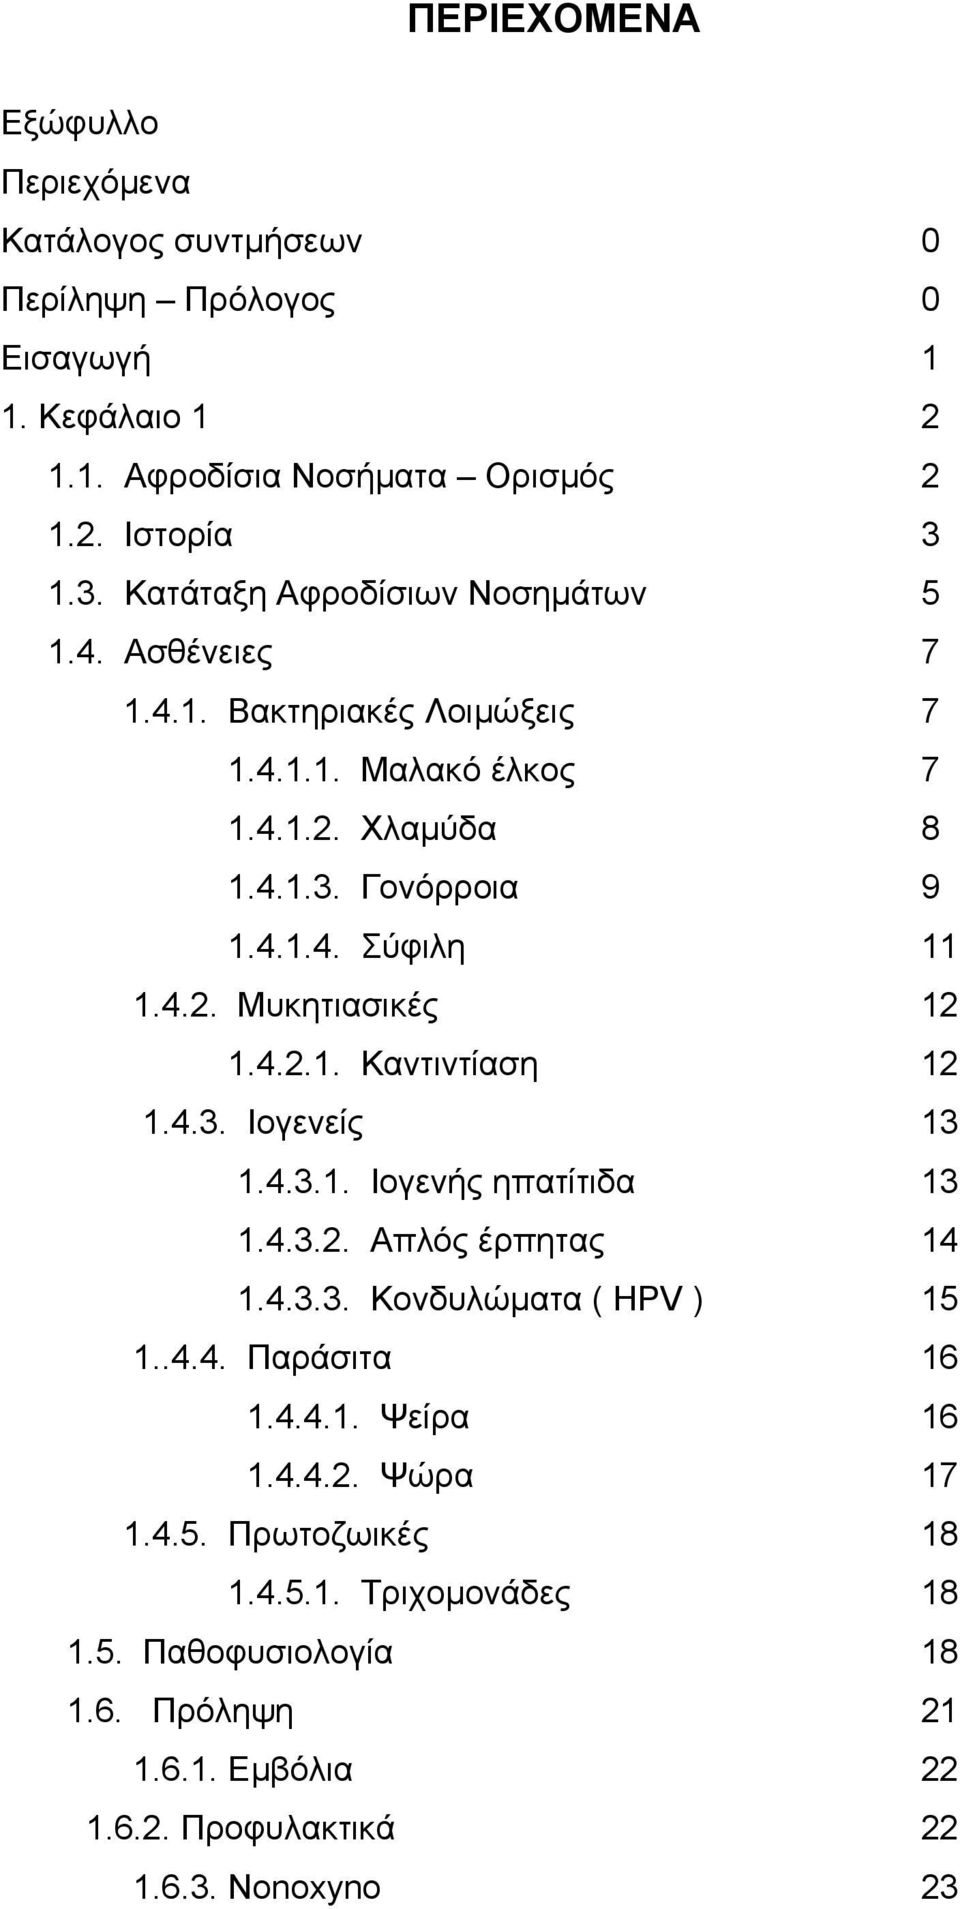 4.2. Μυκητιασικές 12 1.4.2.1. Καντιντίαση 12 1.4.3. Ιογενείς 13 1.4.3.1. Ιογενής ηπατίτιδα 13 1.4.3.2. Απλός έρπητας 14 1.4.3.3. Κονδυλώματα ( HPV ) 15 1..4.4. Παράσιτα 16 1.